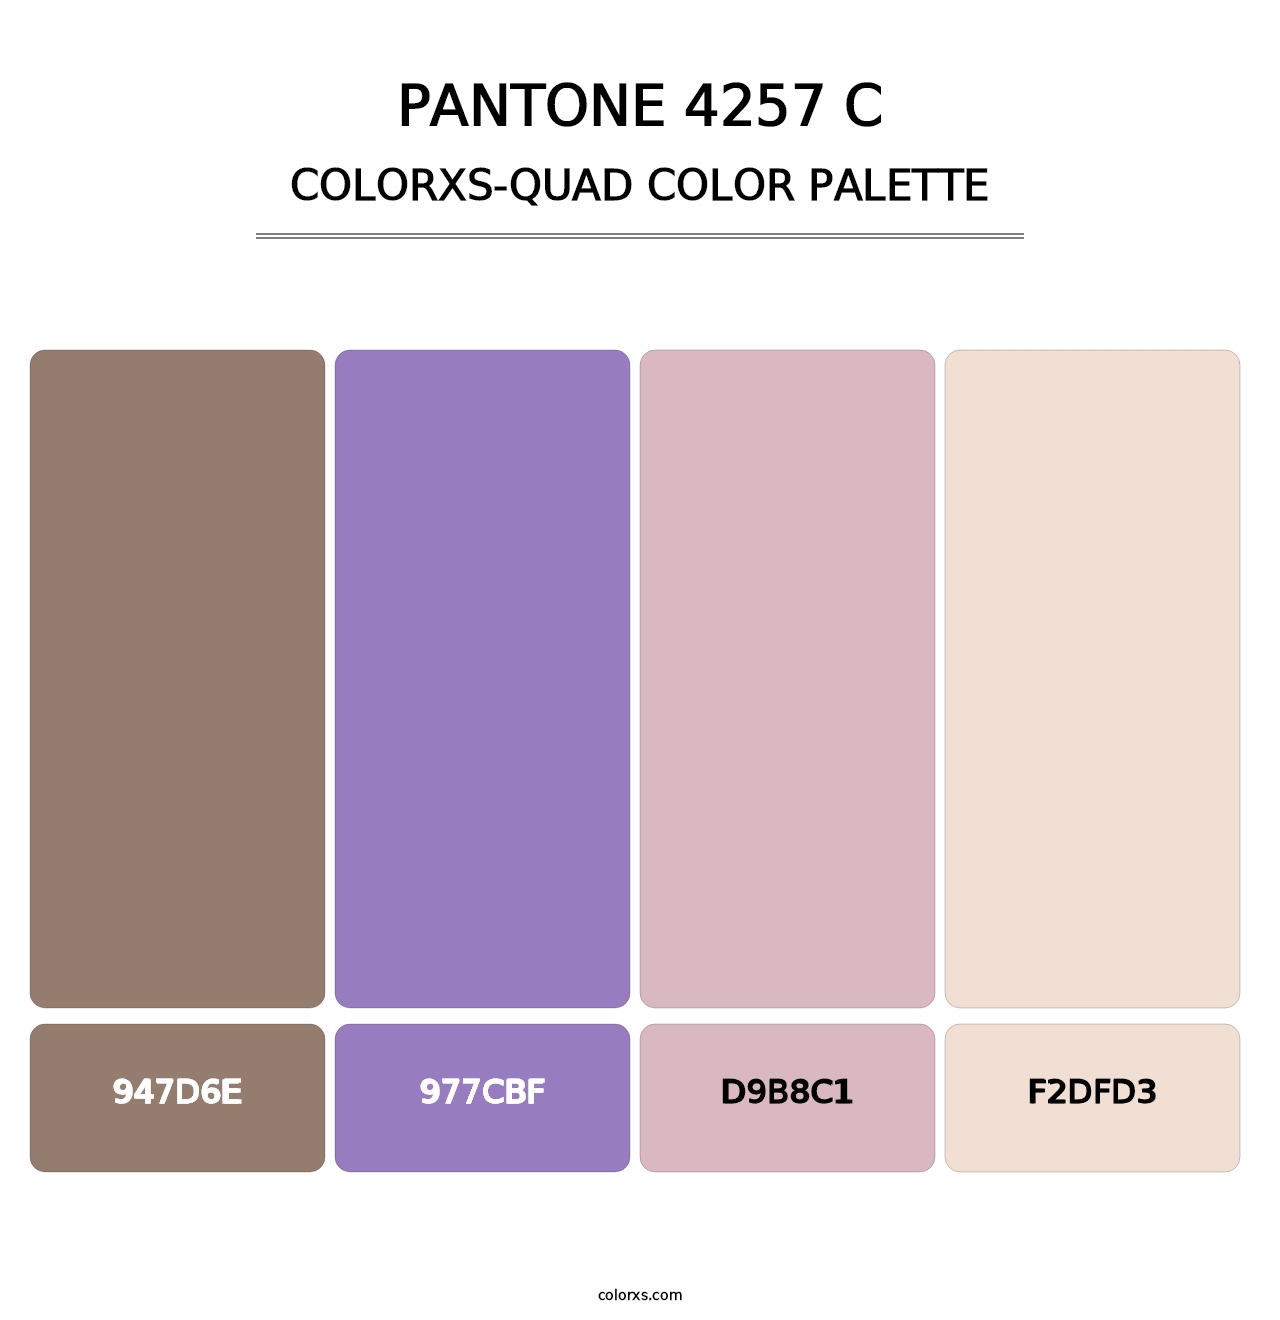 PANTONE 4257 C - Colorxs Quad Palette